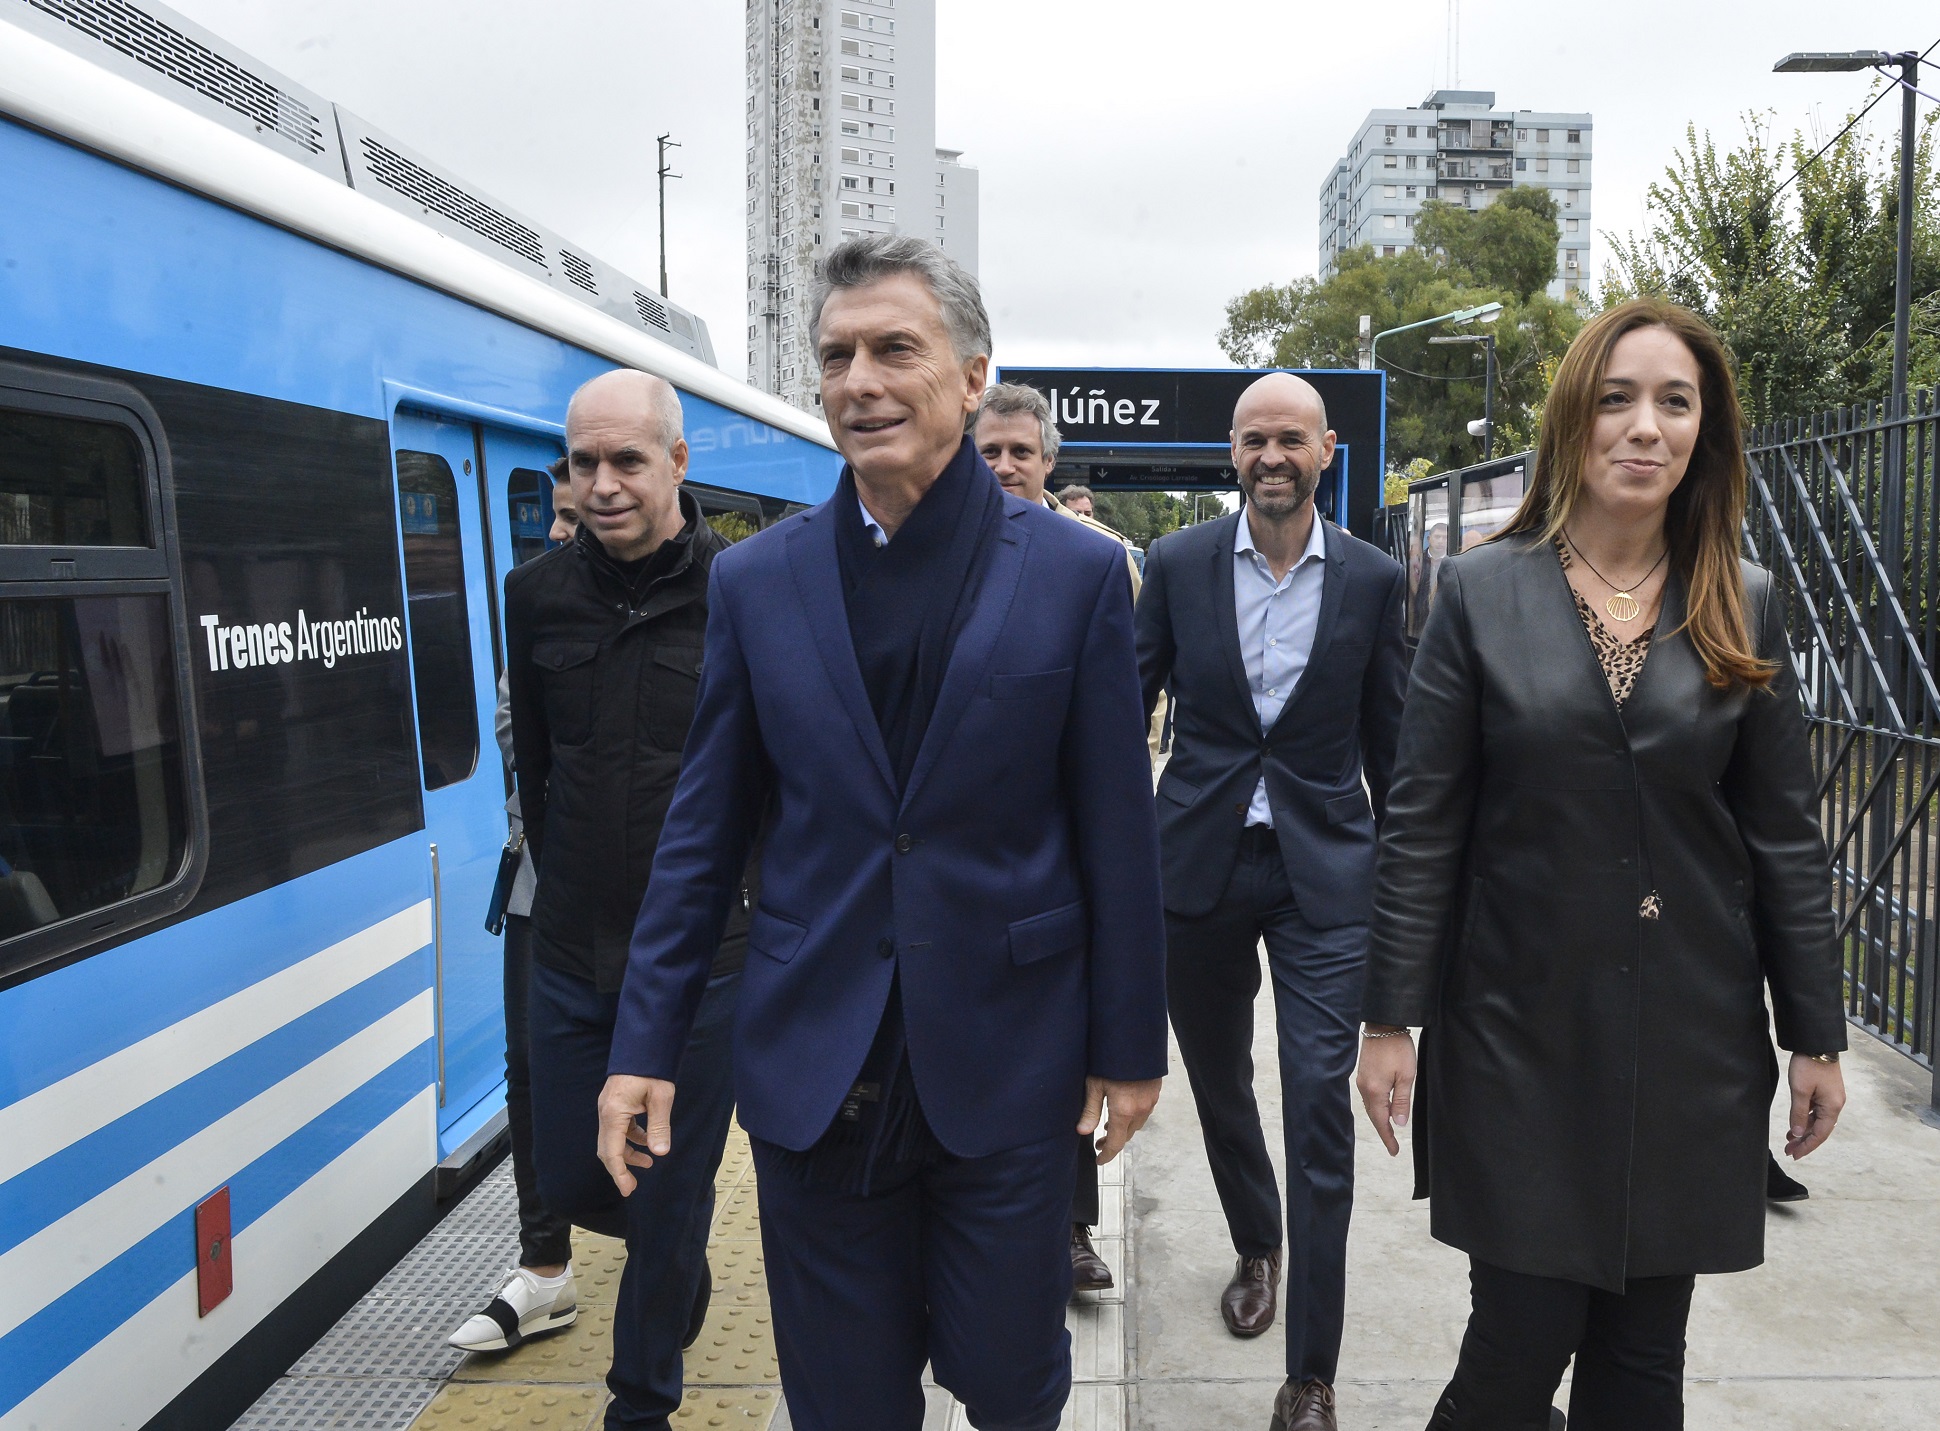 Macri: Por más dudas que haya, argentinos, es por acá